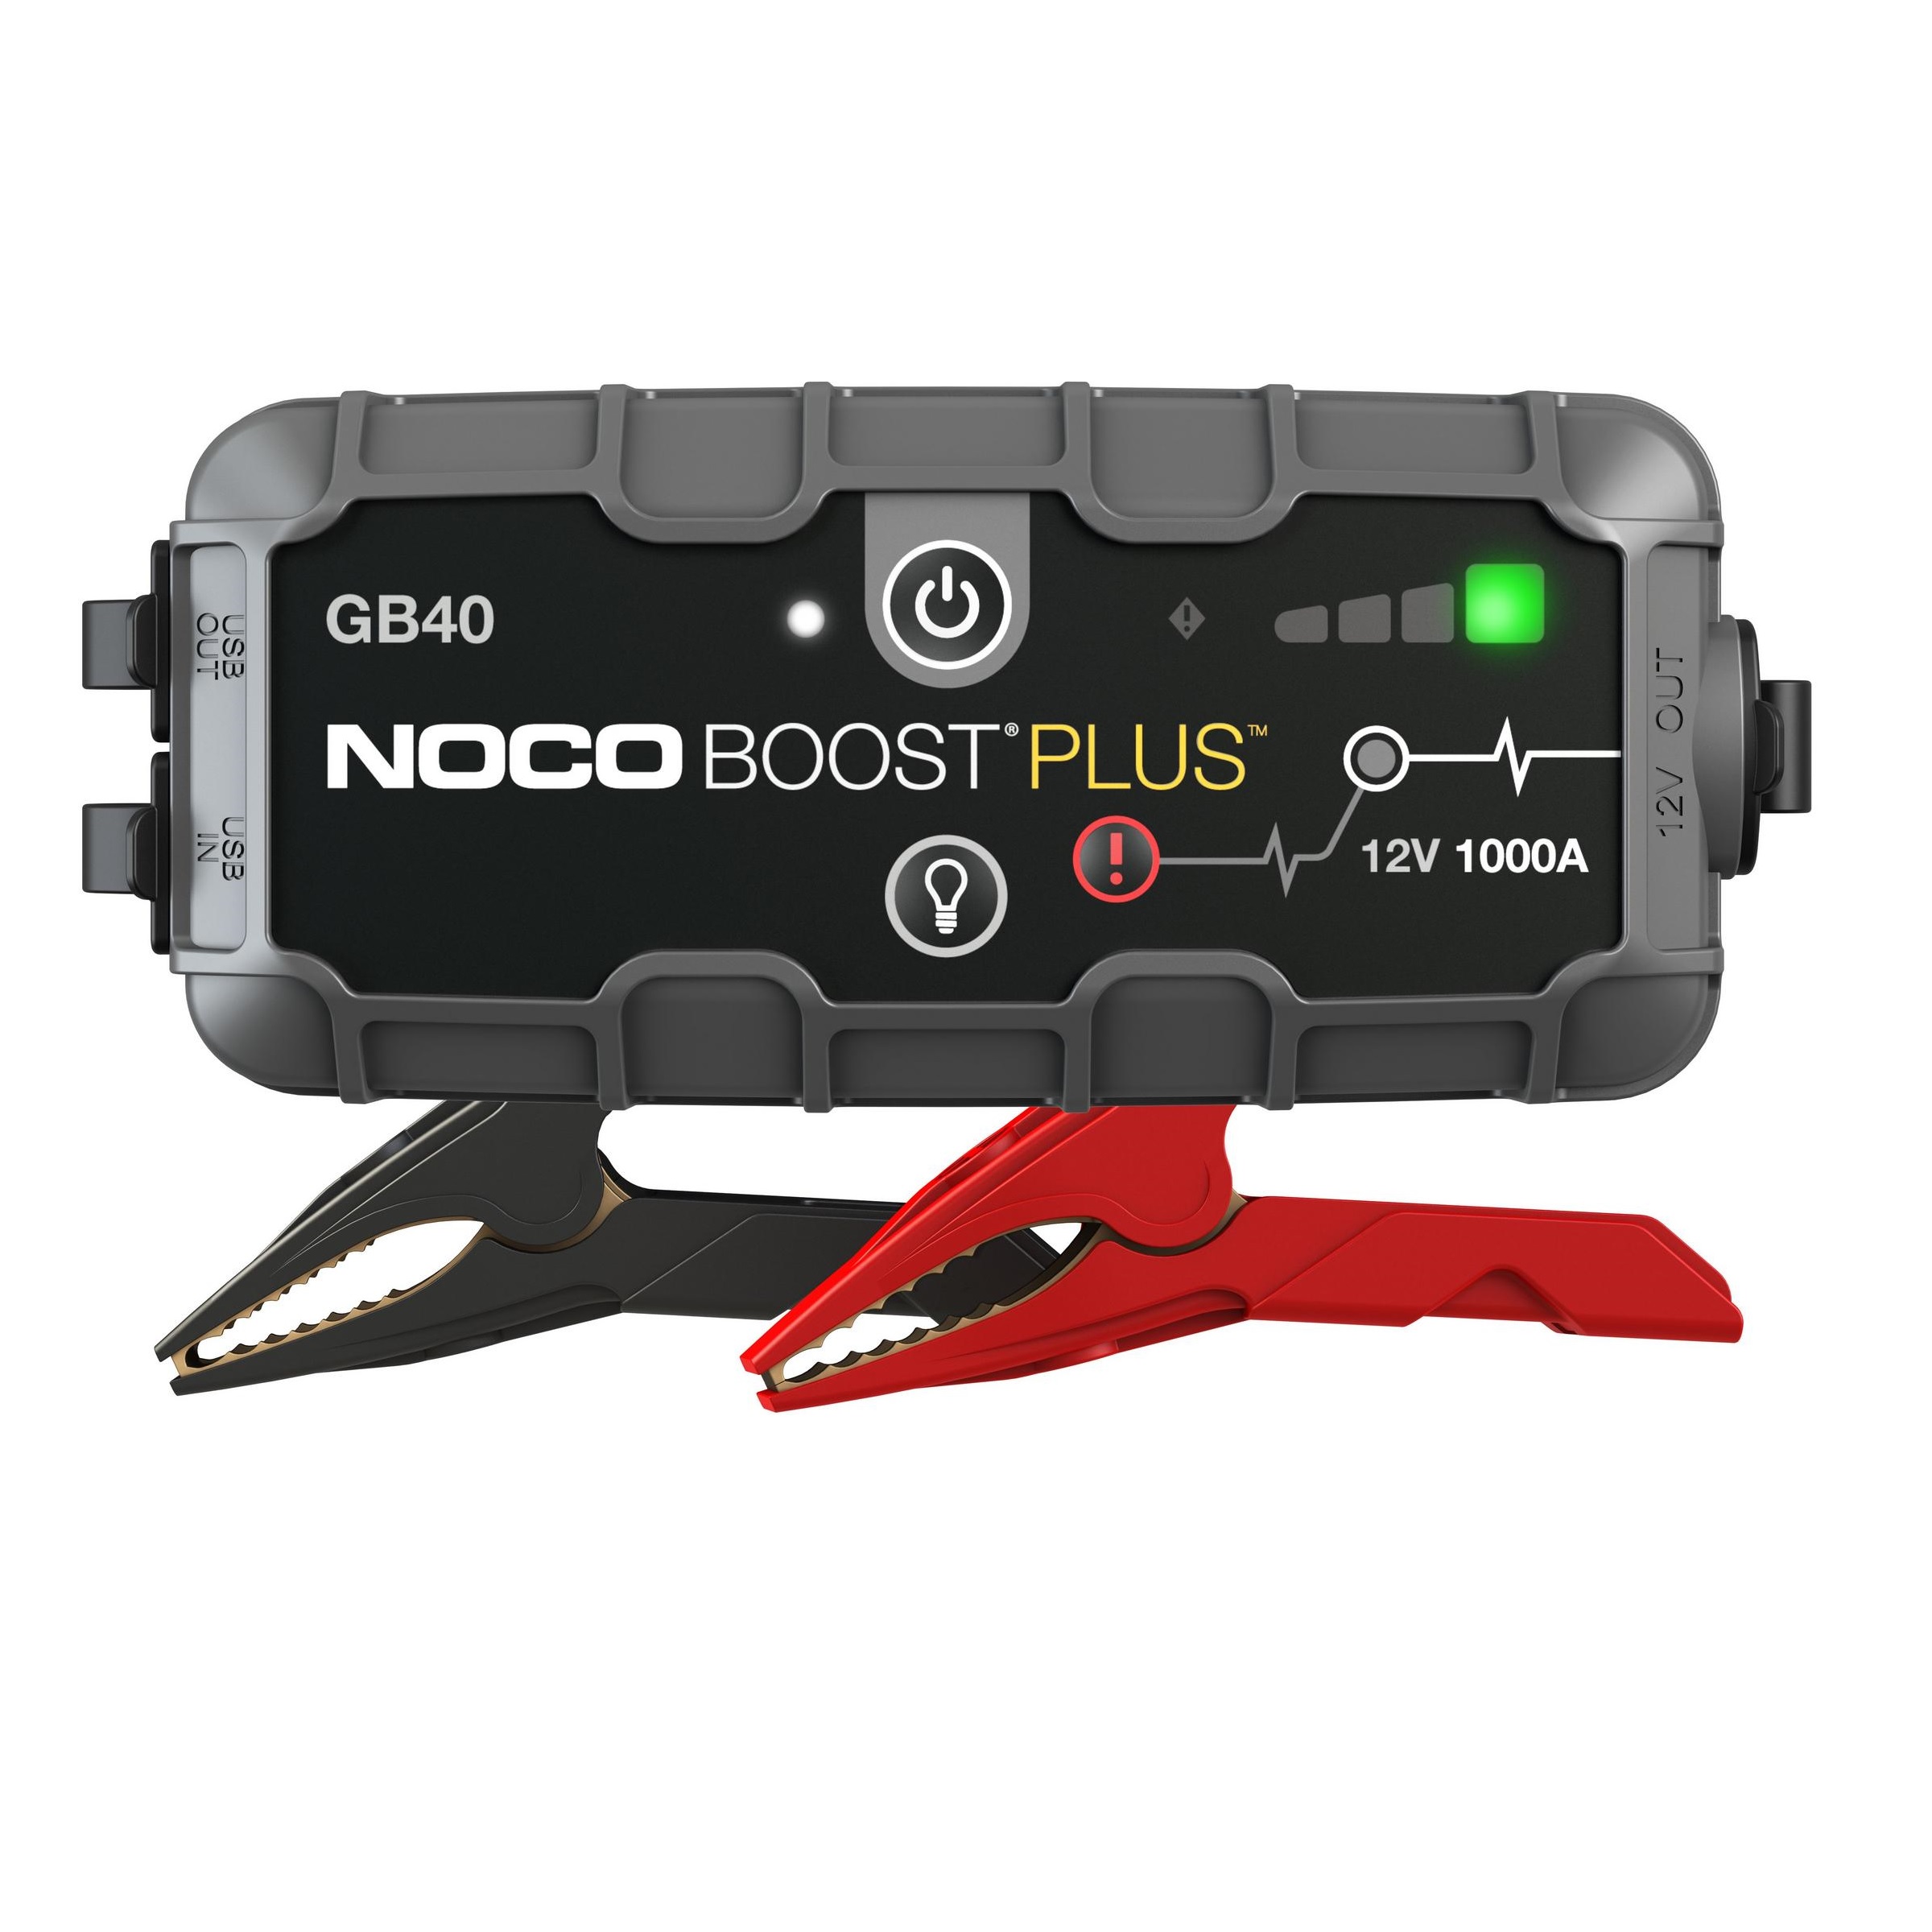 NOCO GB40 Boost Plus 1000A 12V UltraSafe